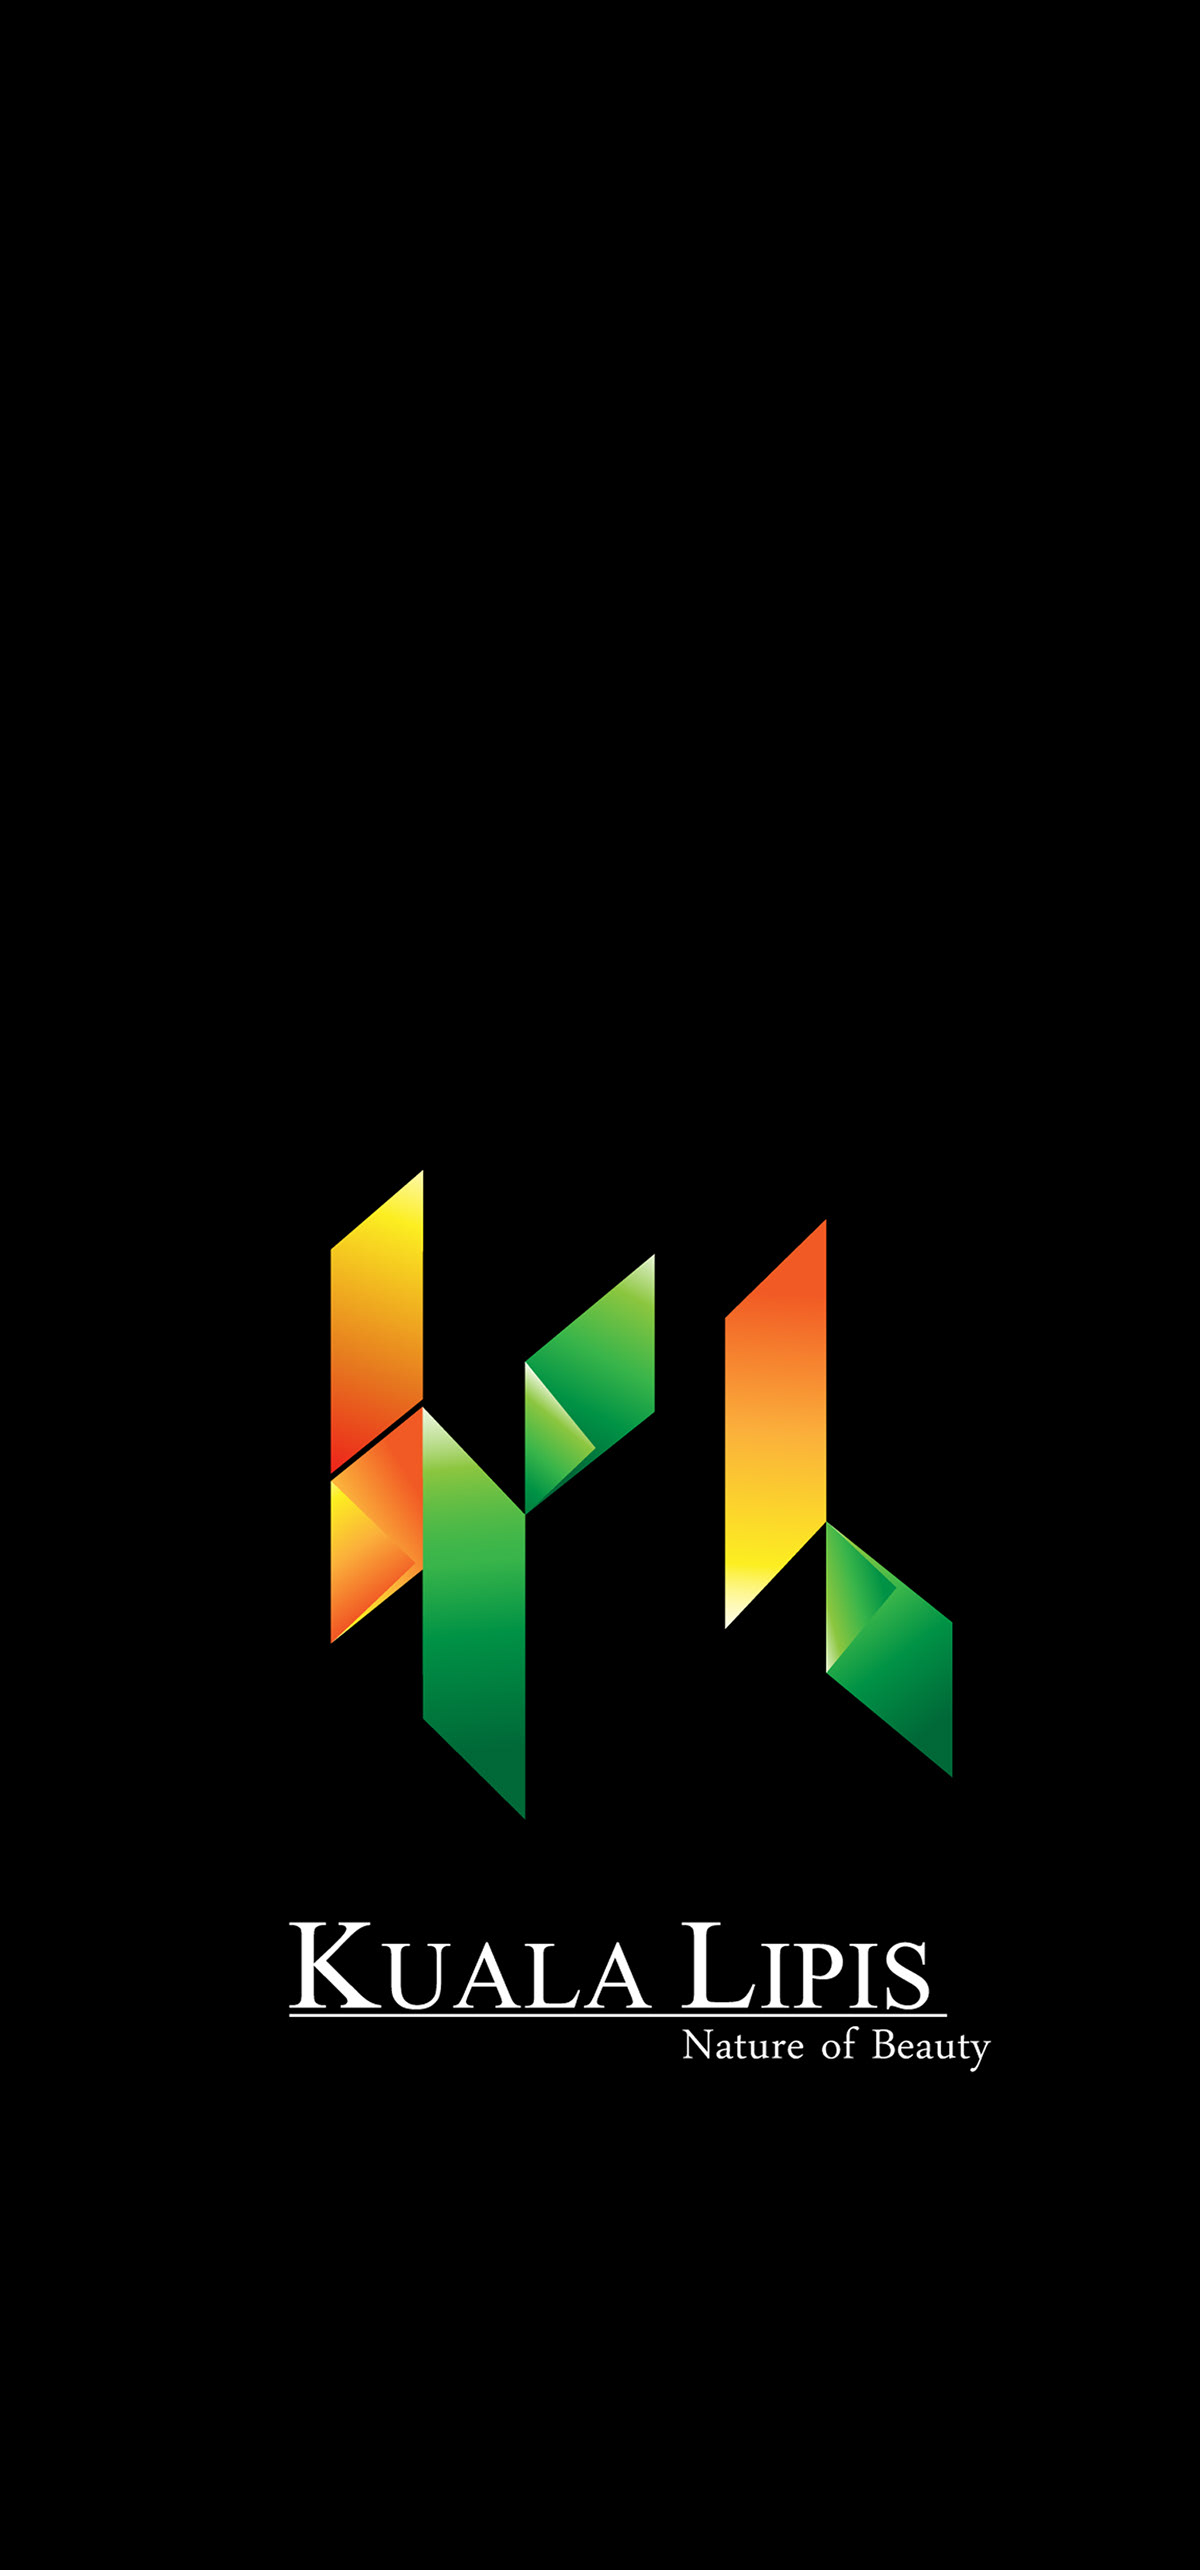 Logo Design town kuala lipis pahang green